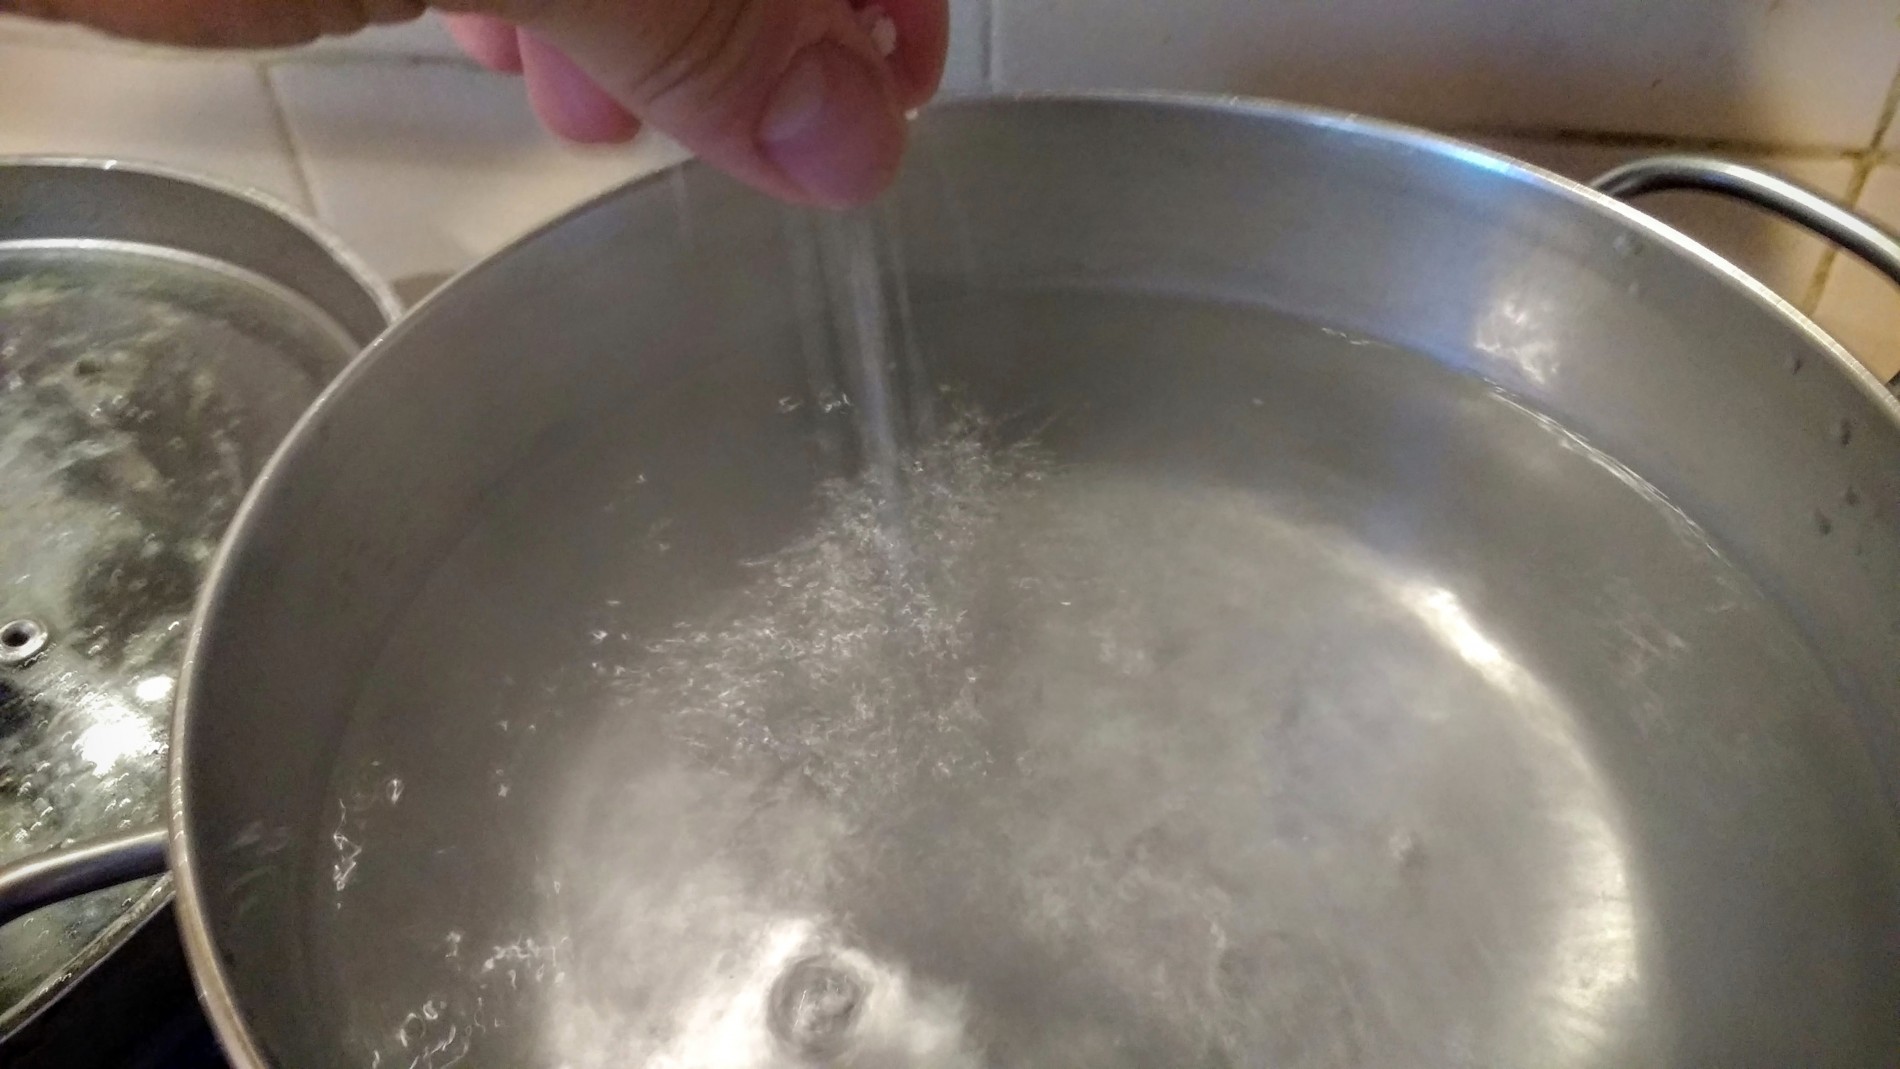 Oltre a insaporire la ricetta, il sale è utile sopratutto per mantenere la temperatura dell'acqua durante la cottura della pasta, l'acqua salata infatti bolle a una temperatura più alta di quella distillata così da compensare la perdita di calore dovuta all'inser